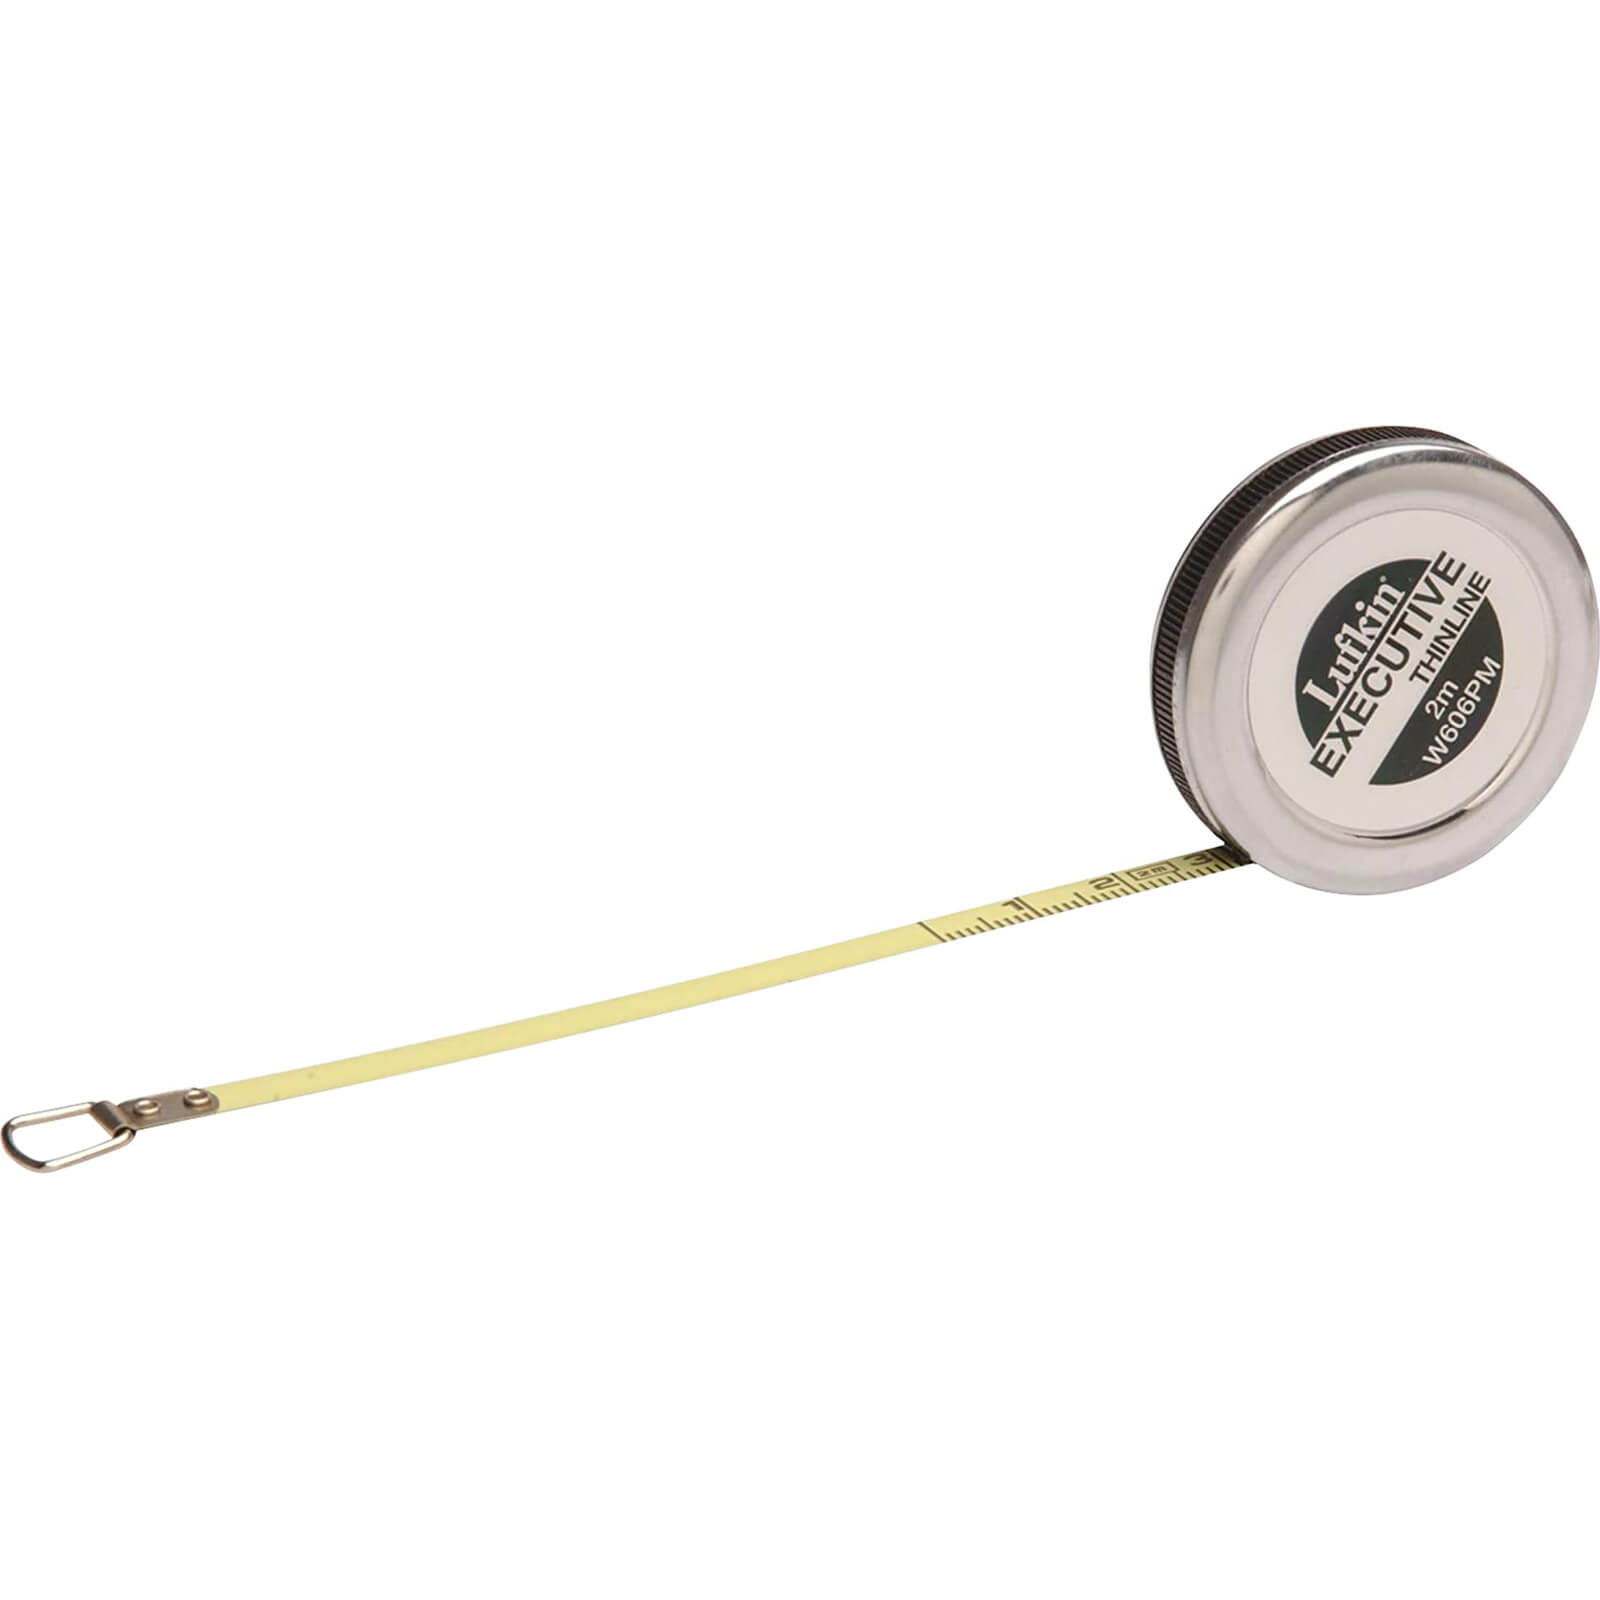 Image of Crescent Lufkin Diameter Tape Measure Metric 2m 6mm